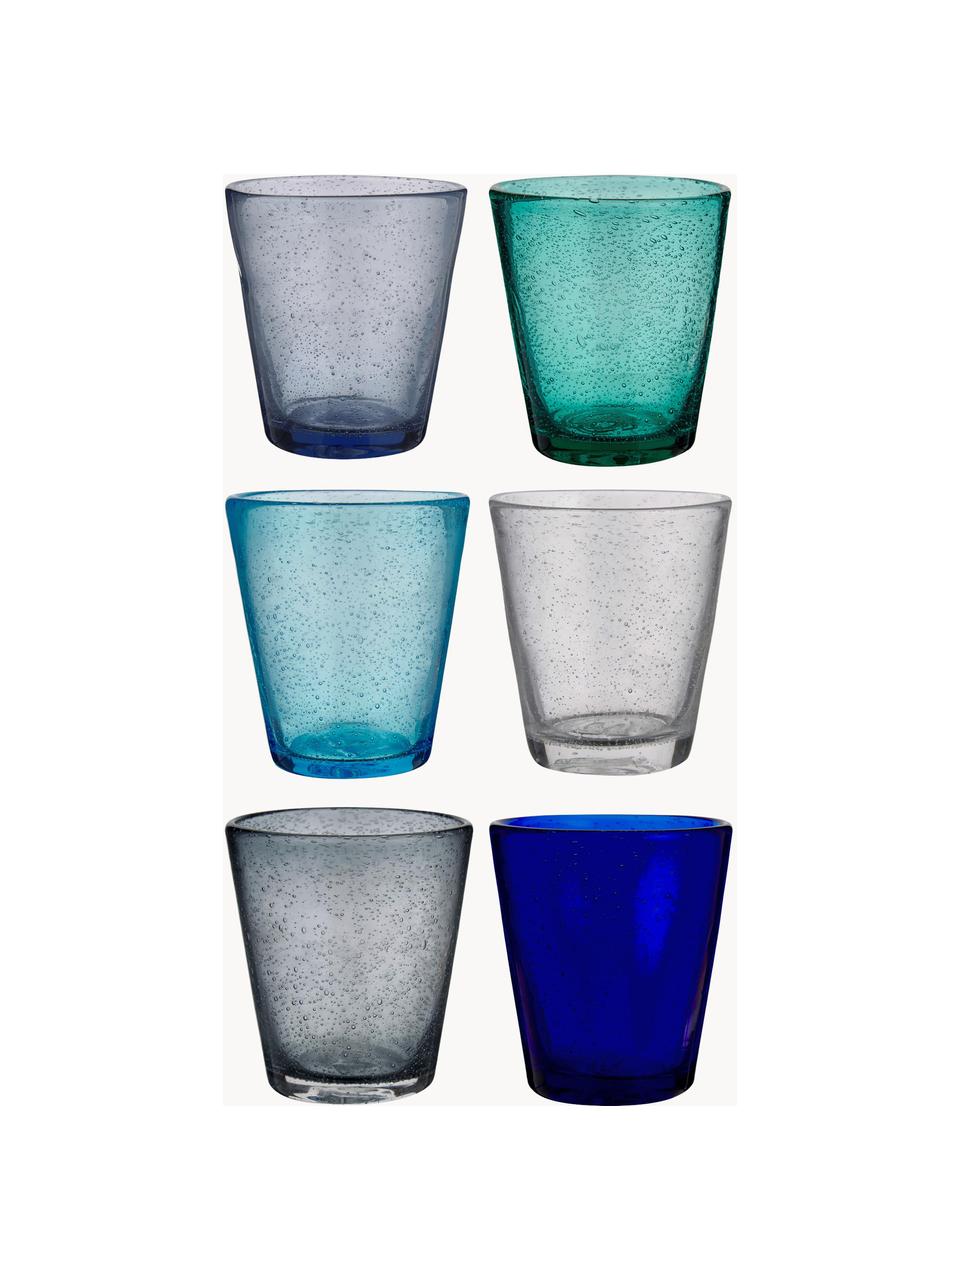 Wassergläser Baita mit Lufteinschlüssen, 6er-Set, Glas, Blau- und Grautöne, Ø 9 x H 10 cm